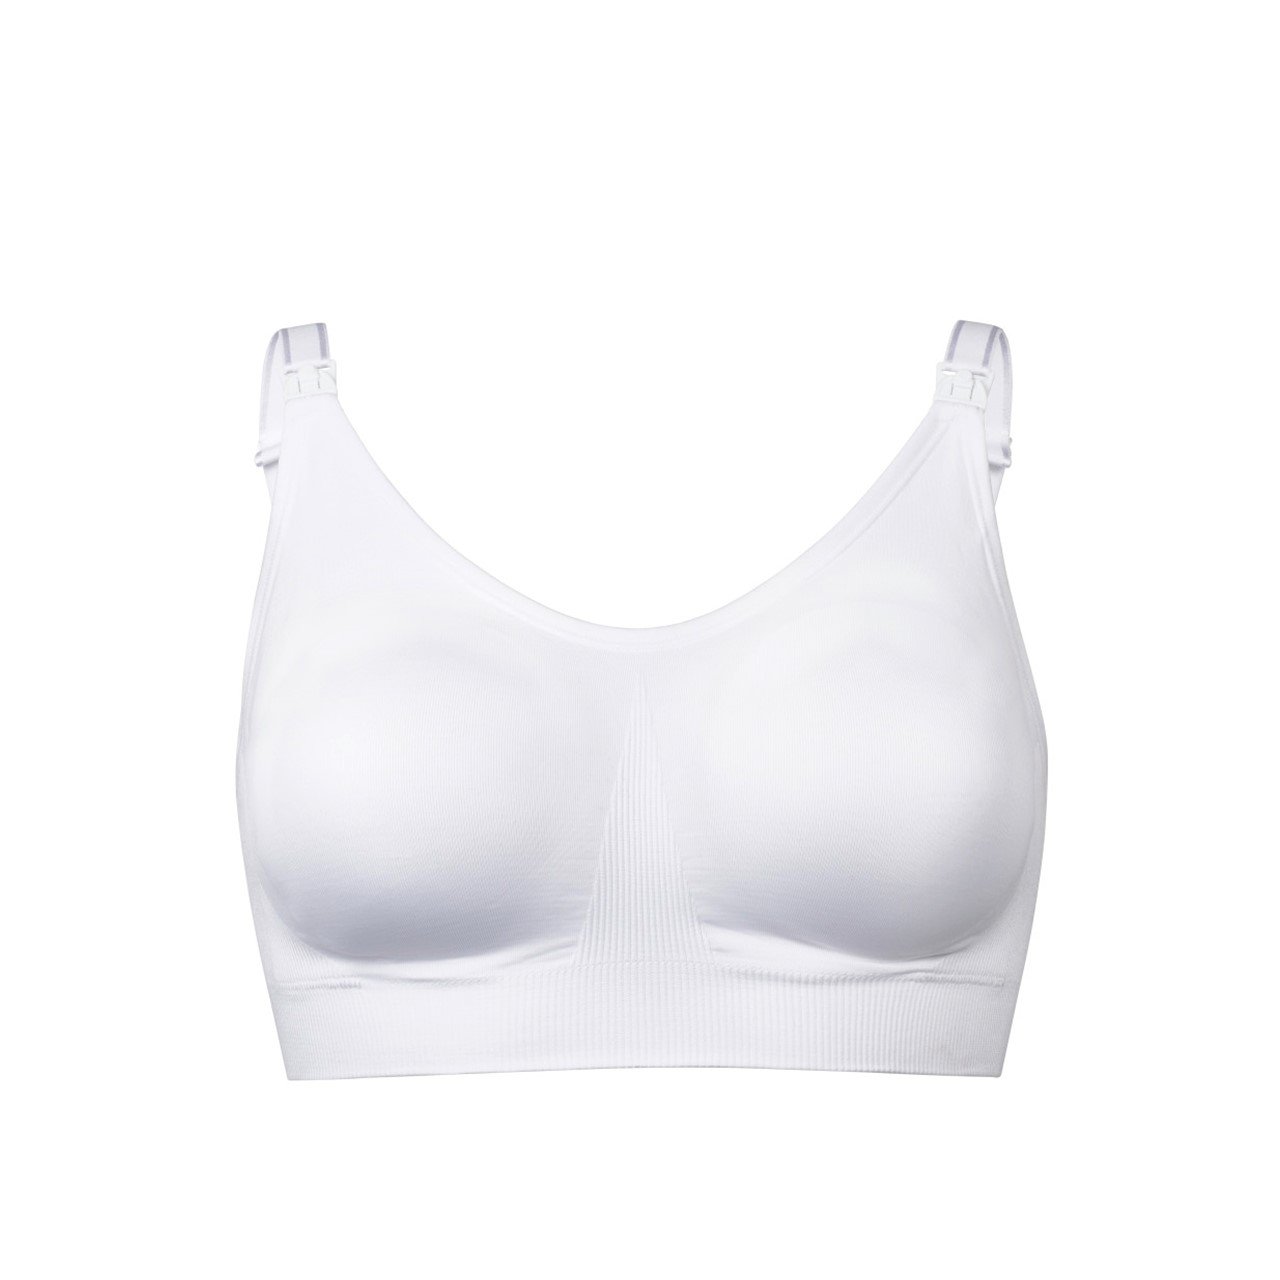 https://static.beautytocare.com/media/catalog/product/m/e/medela-ultimate-bodyfit-bra-white-medium-size-x1.jpg